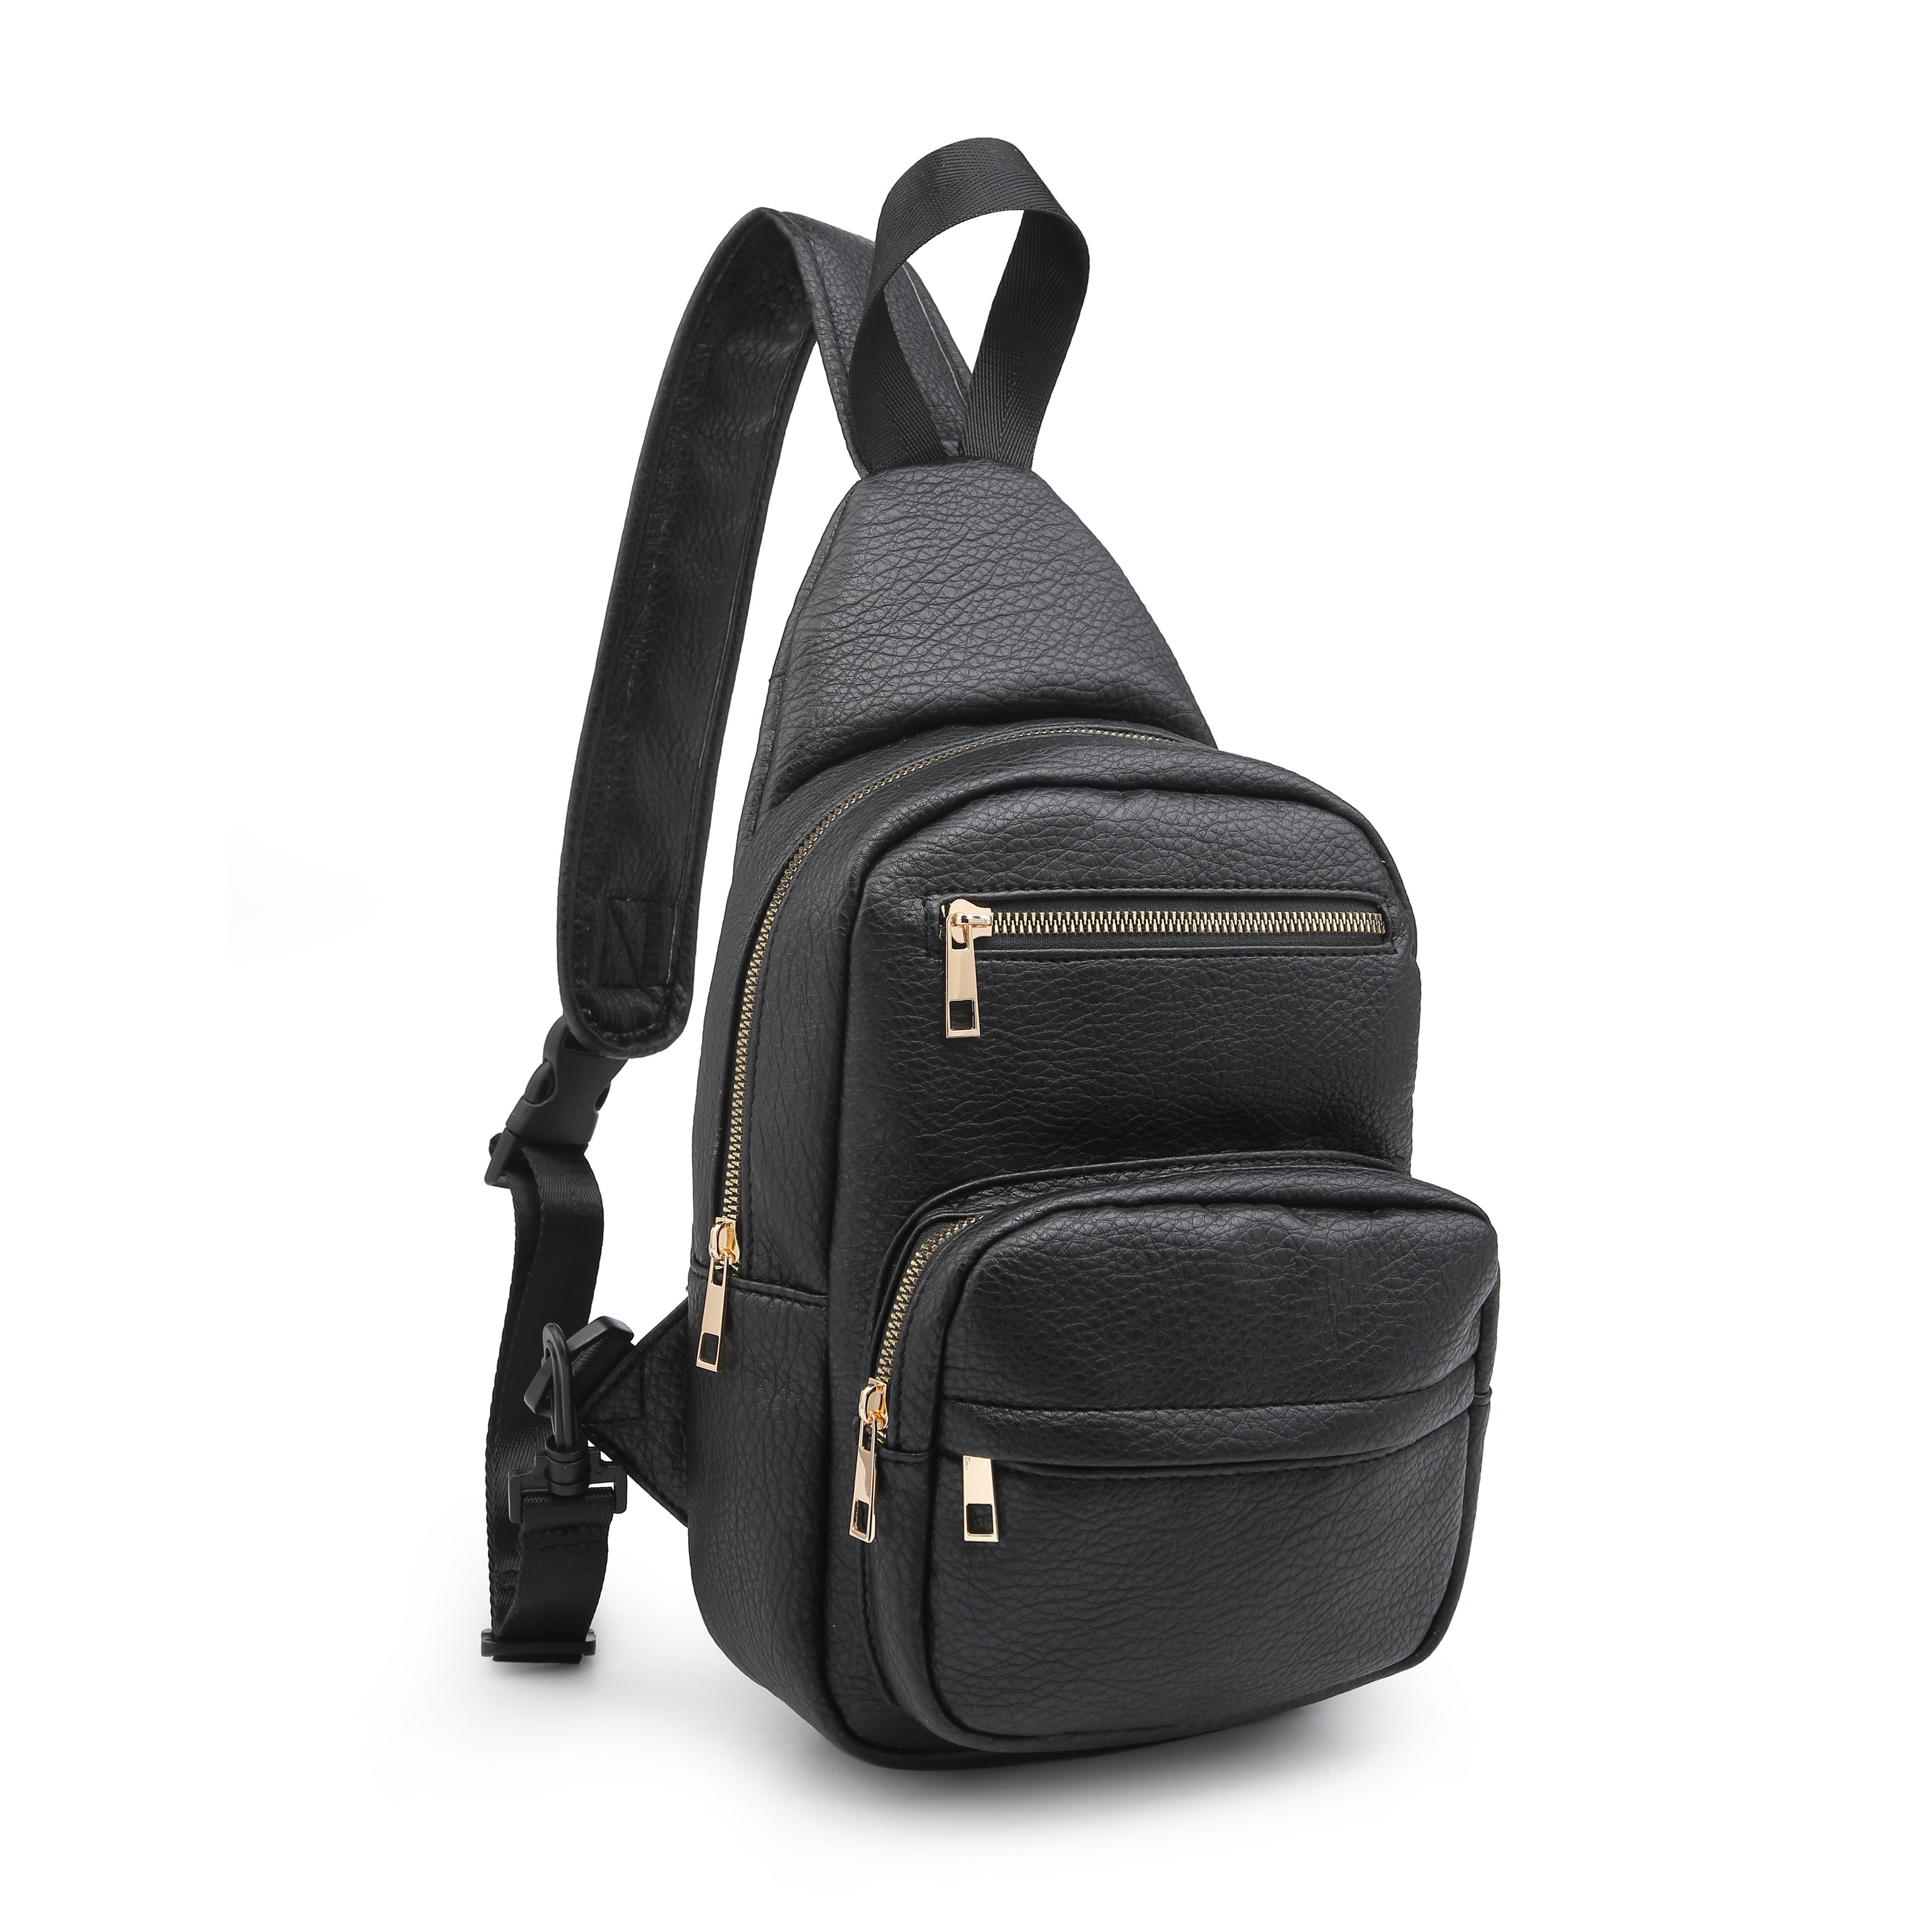 Men's Women's Travel Sling Bag Crossbody Bags Chest Shoulder Bag Small Backpack 